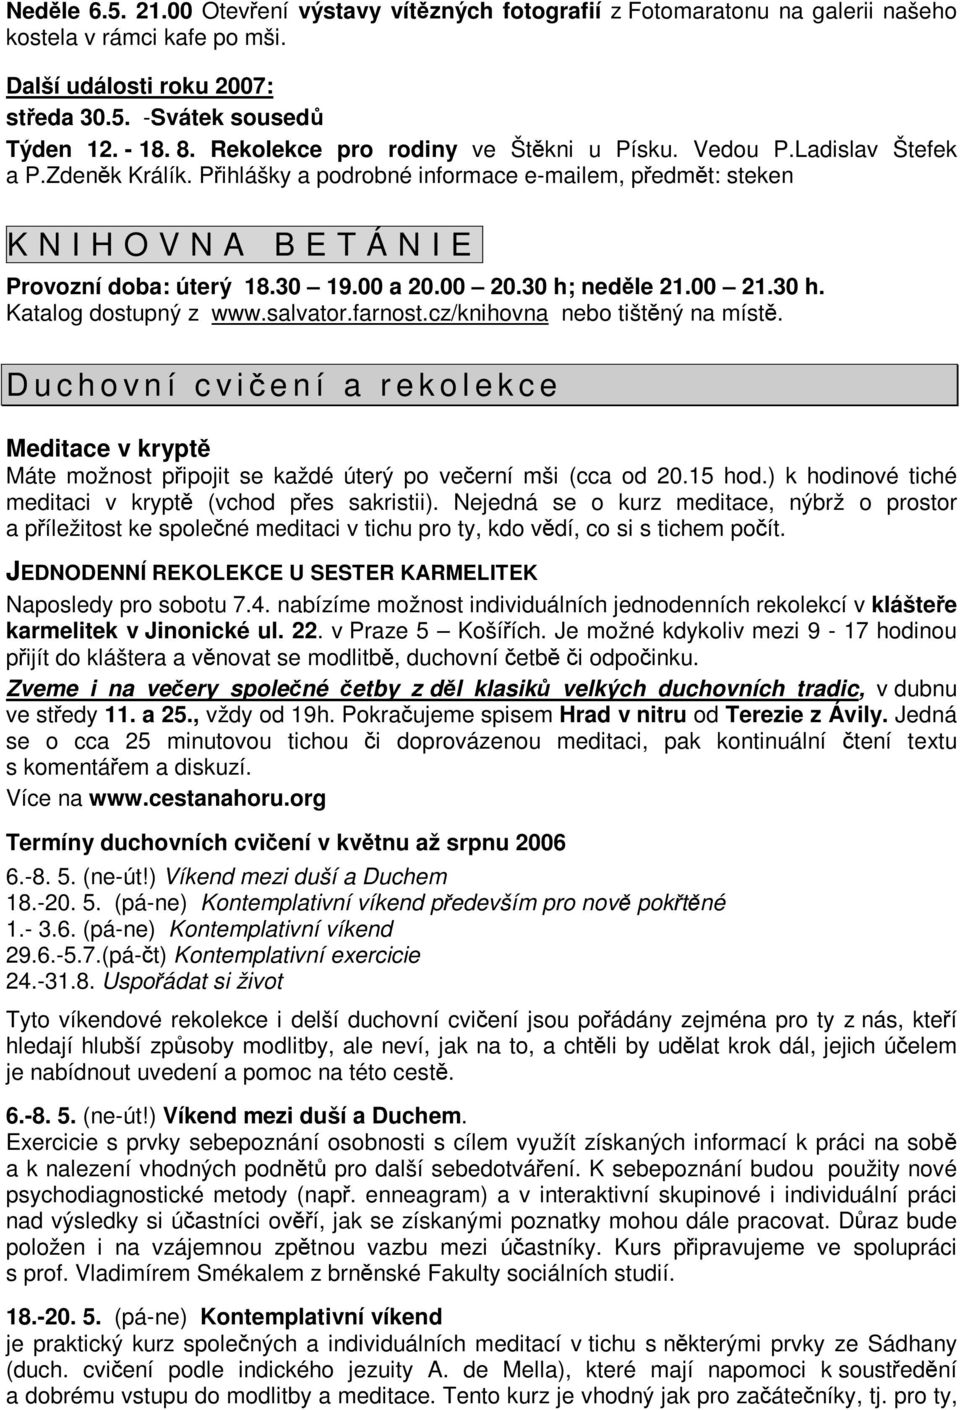 00 a 20.00 20.30 h; nedle 21.00 21.30 h. Katalog dostupný z www.salvator.farnost.cz/knihovna nebo tištný na míst.